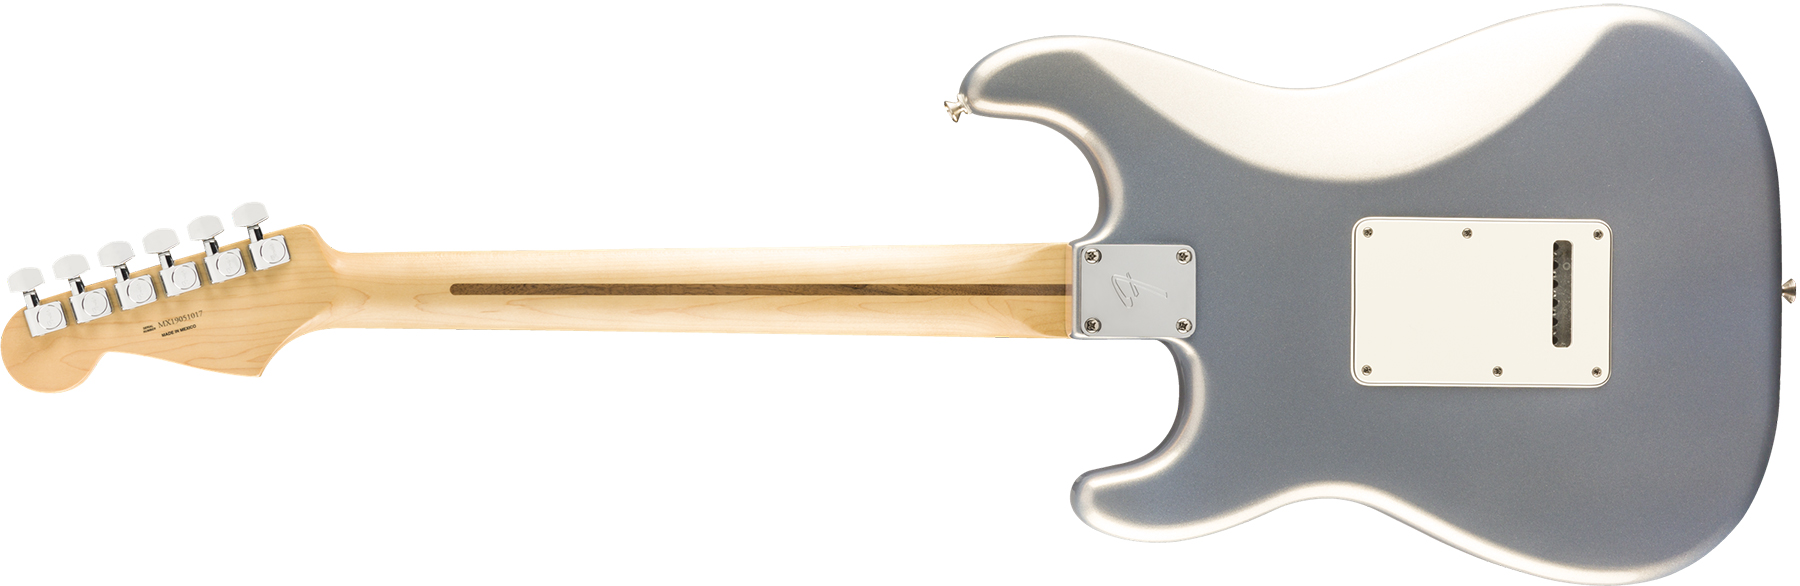 Fender Strat Player Mex 3s Trem Pf - Silver - Elektrische gitaar in Str-vorm - Variation 1